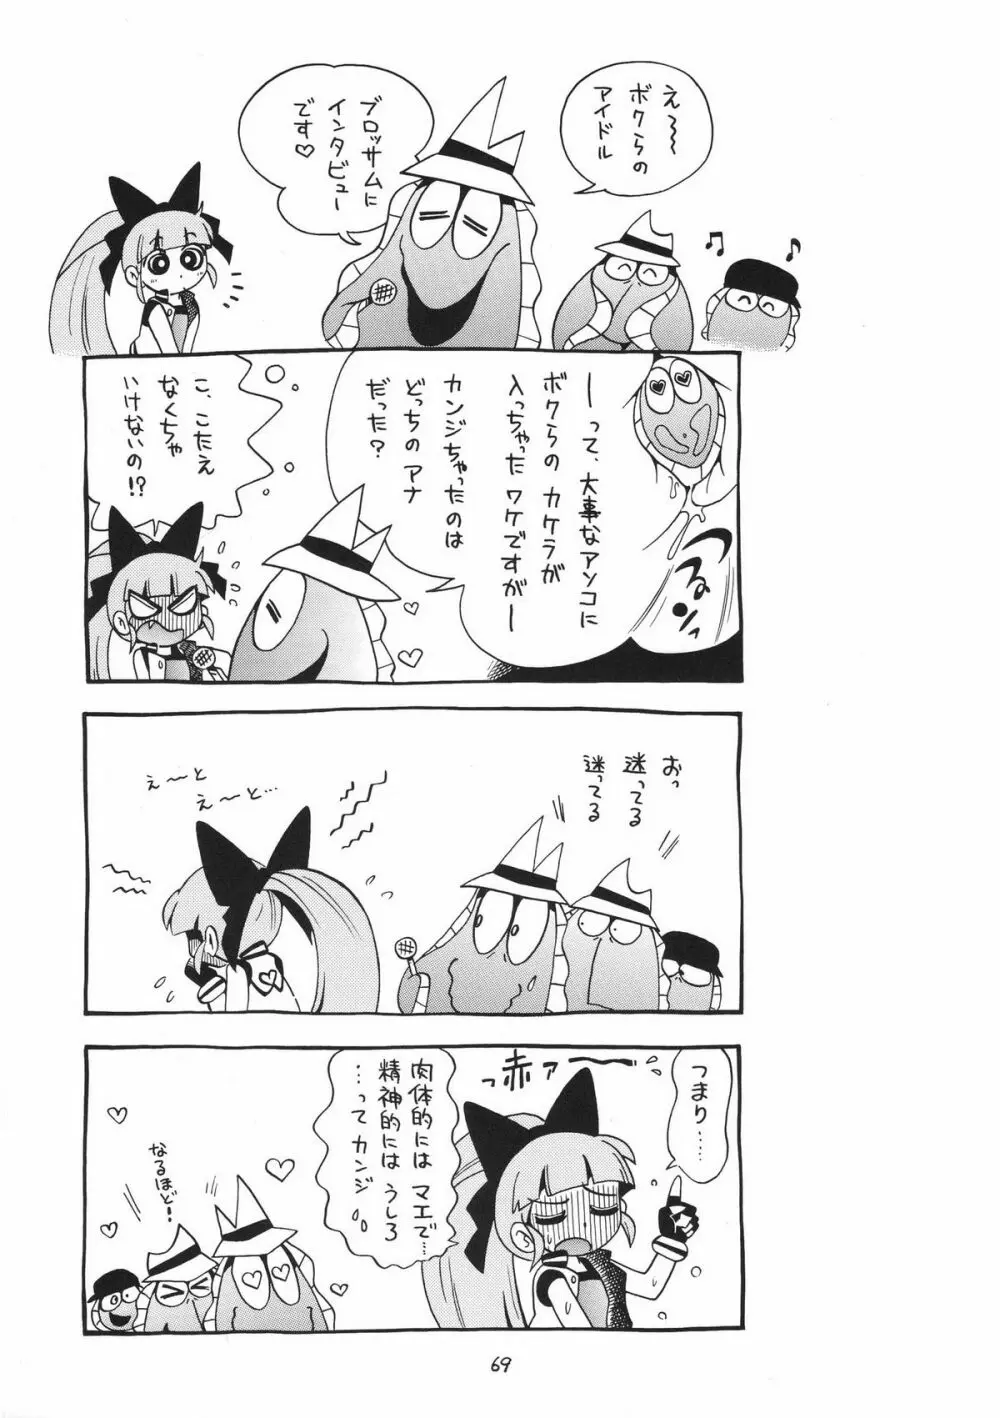 ケミカルZ おんなのこ - page69